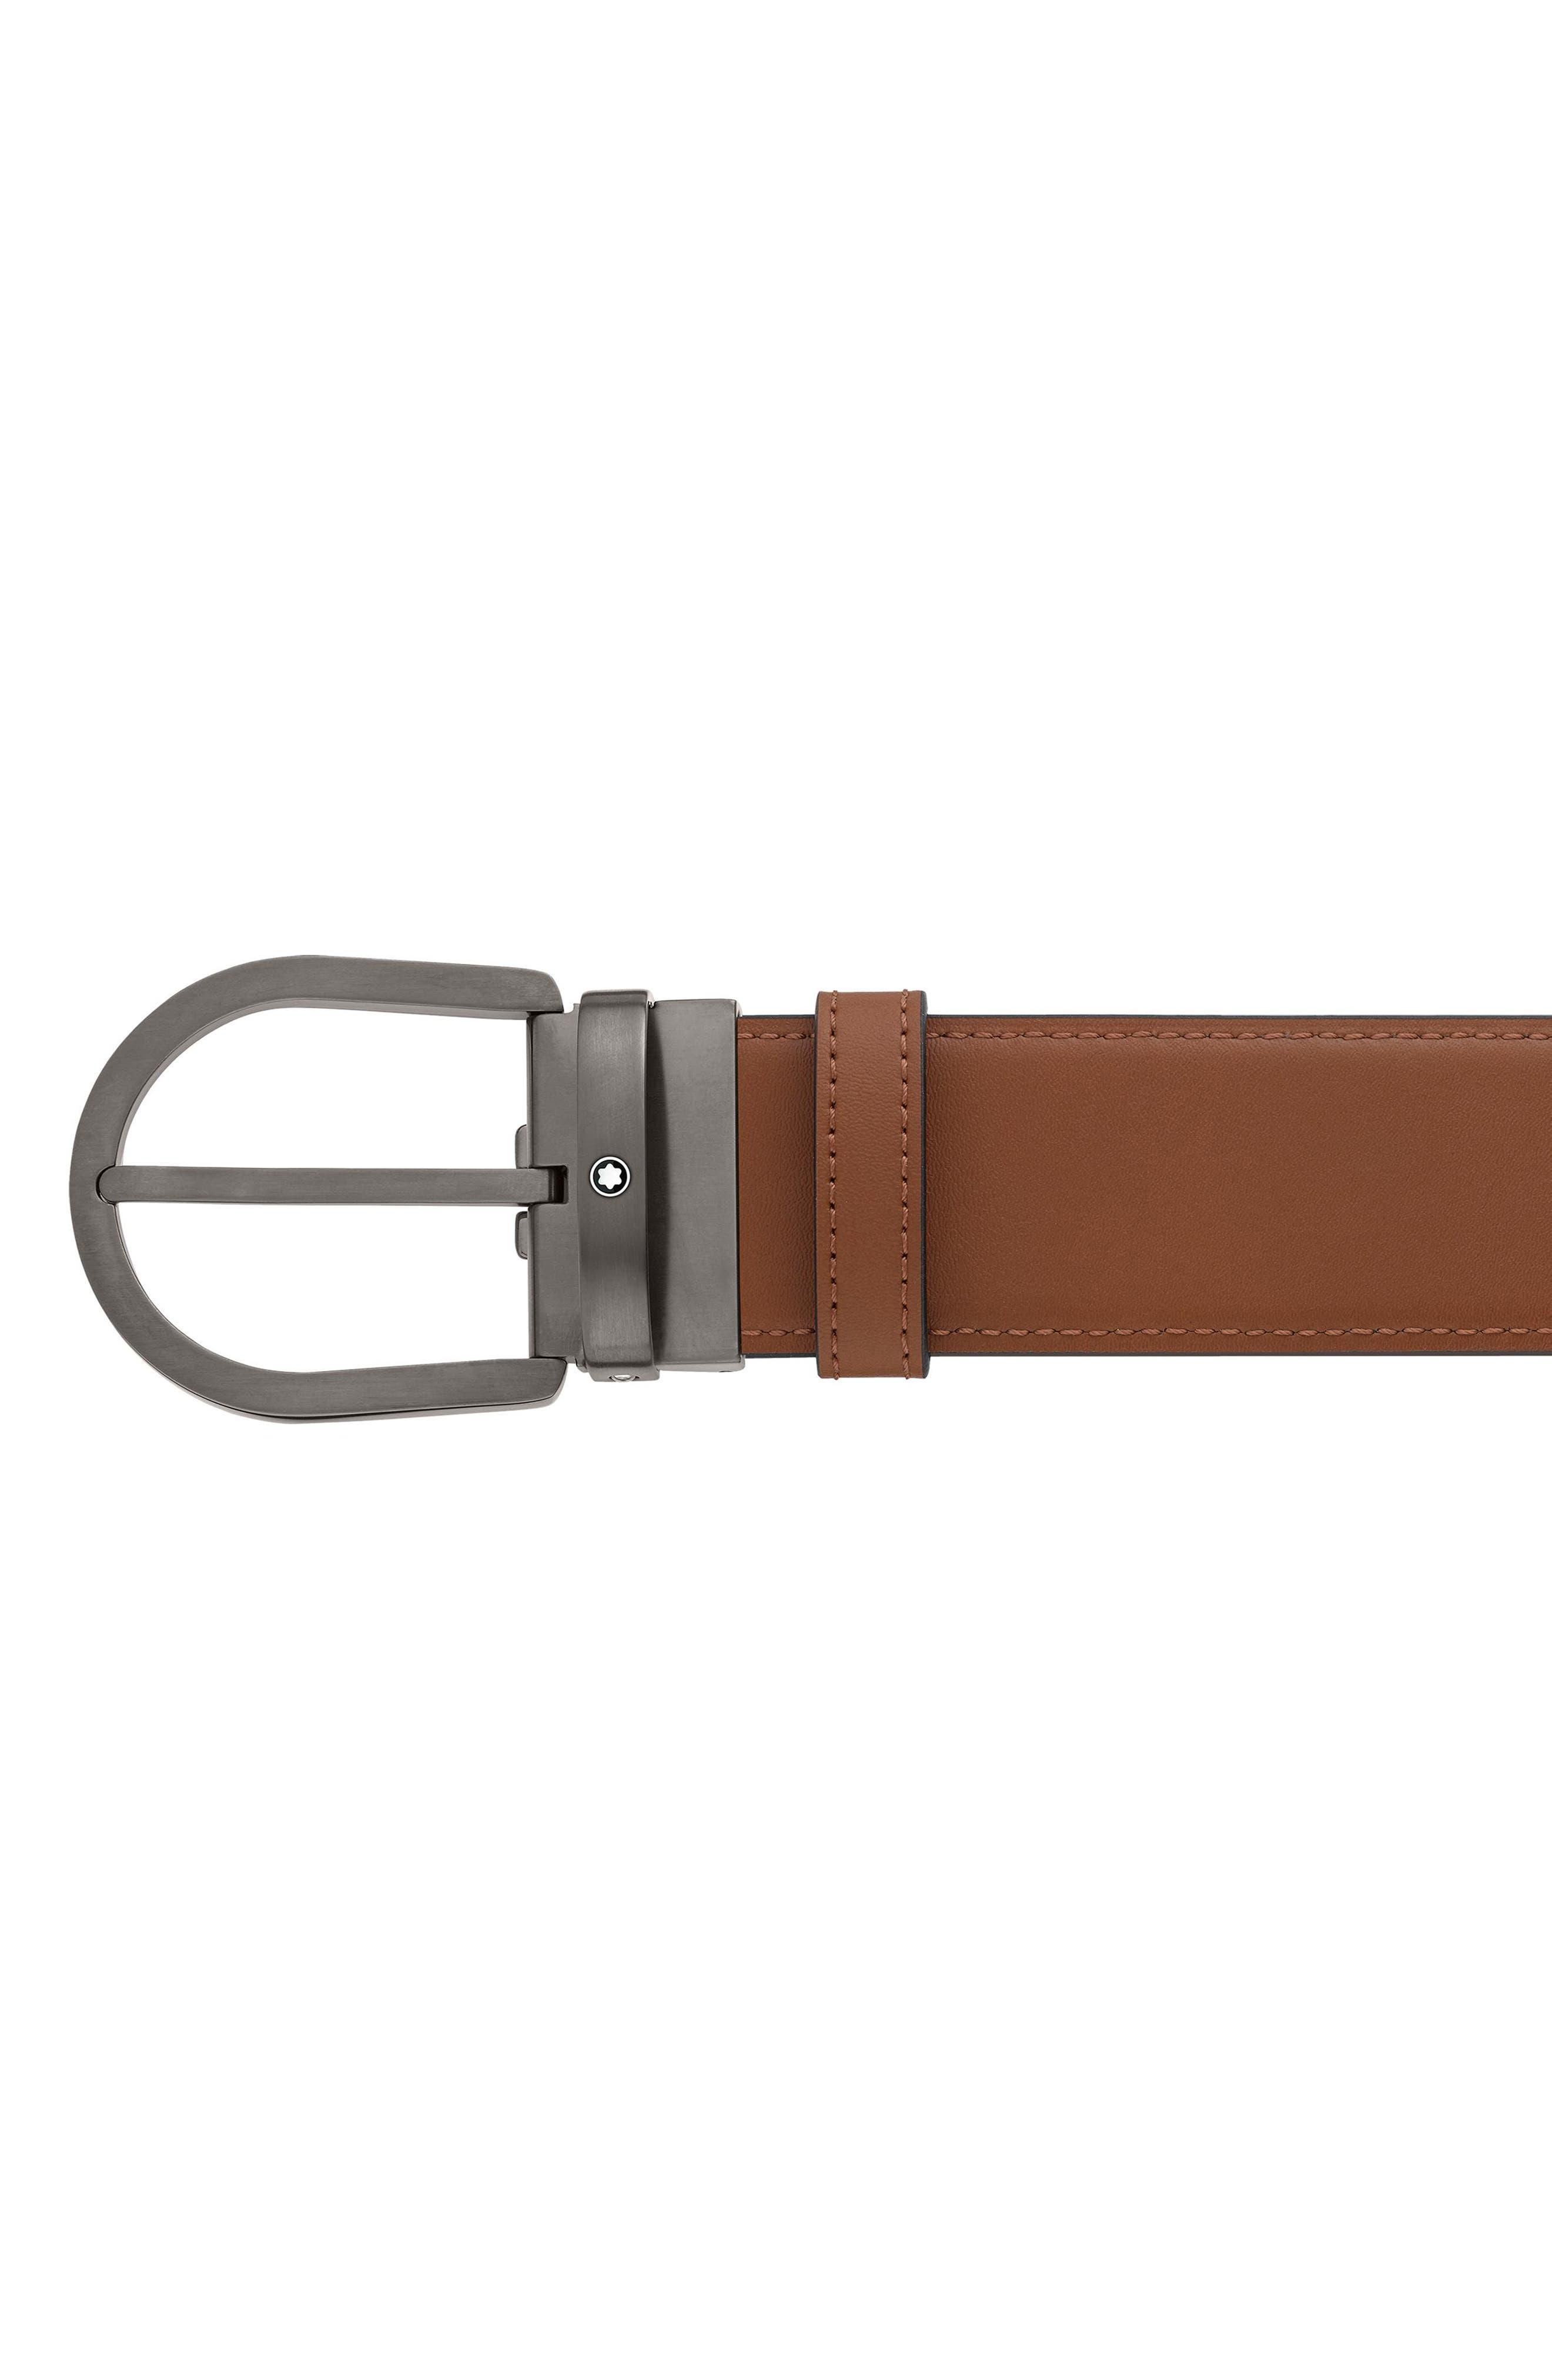 Montblanc - Black/Brown 30 mm Reversible Leather Belt - Belts - Black